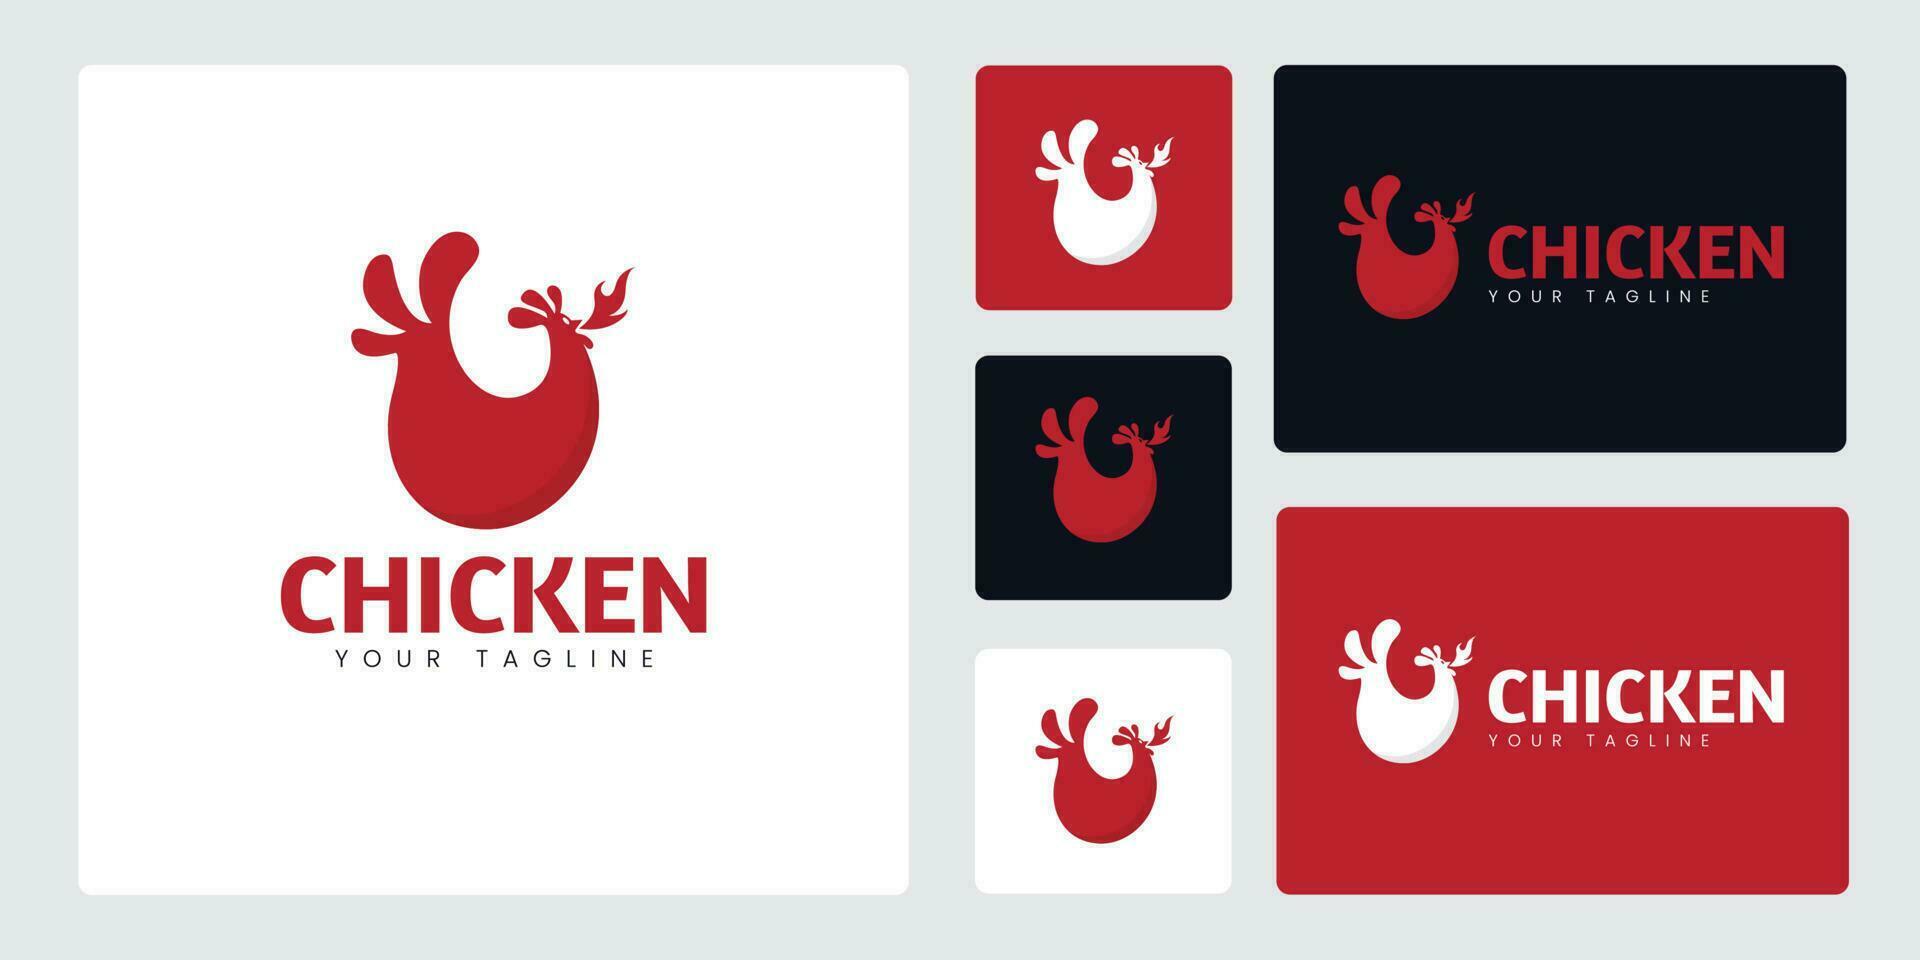 de kyckling logotyp är en mjuk kyckling form till beskriva en flexibel produkt. detta logotyp är lämplig för kryddad kyckling och tupp tema restaurang företag. vektor